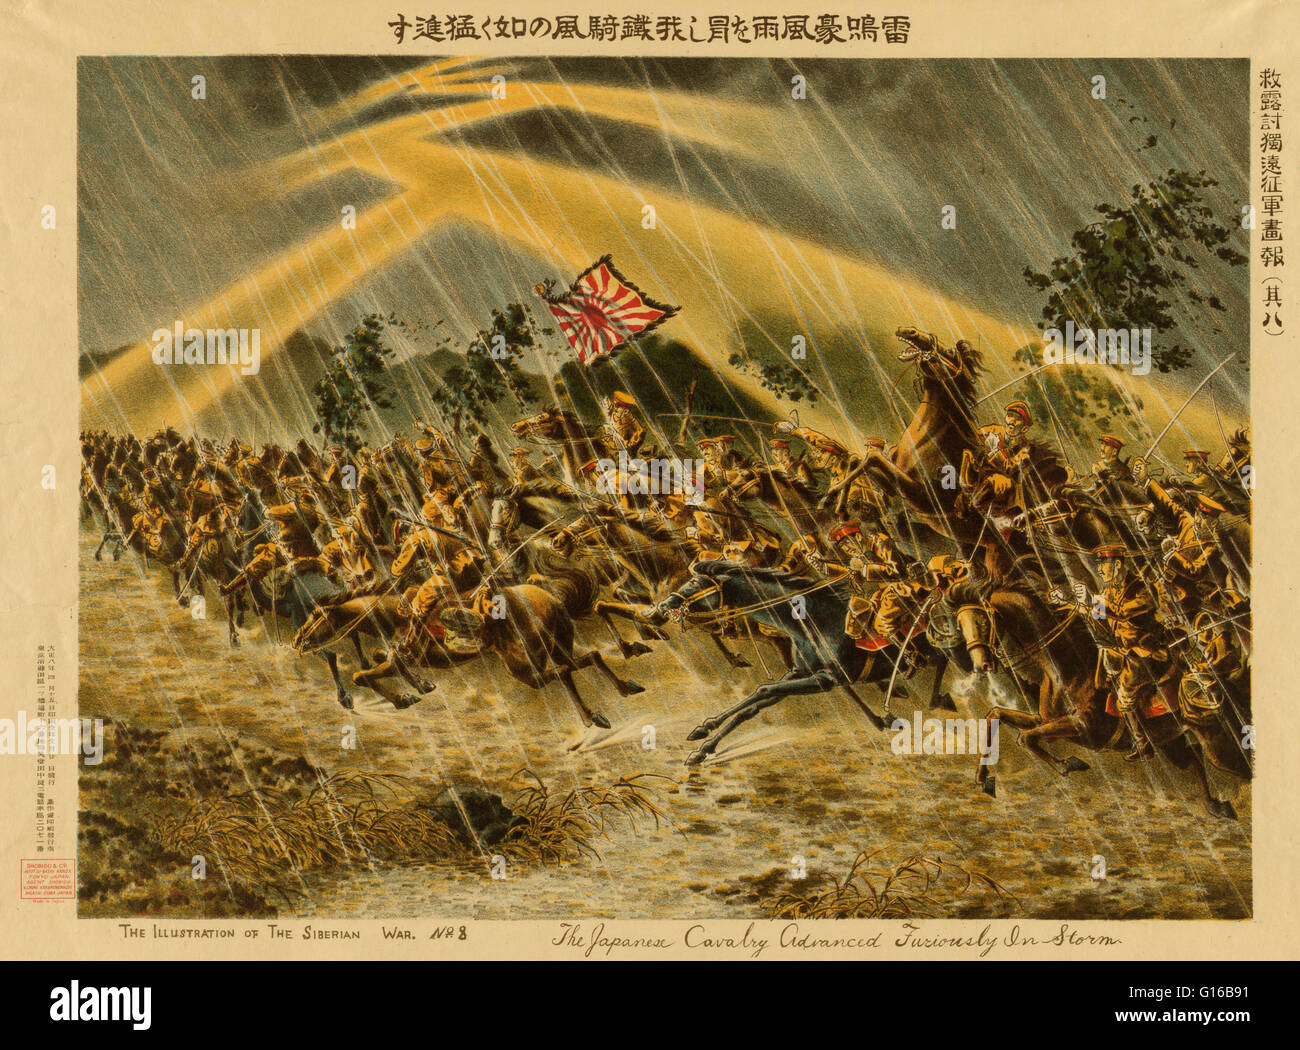 Titolo: "i soldati di cavalleria giapponese avanzate furiosamente in tempesta." Il Siberiano intervento (1918-22) è stato l'invio di truppe dell'Entente poteri al Russian Maritime Provinces come parte di un più ampio sforzo da parte delle potenze occidentali e il Giappone per il supporto di Pentecoste Foto Stock